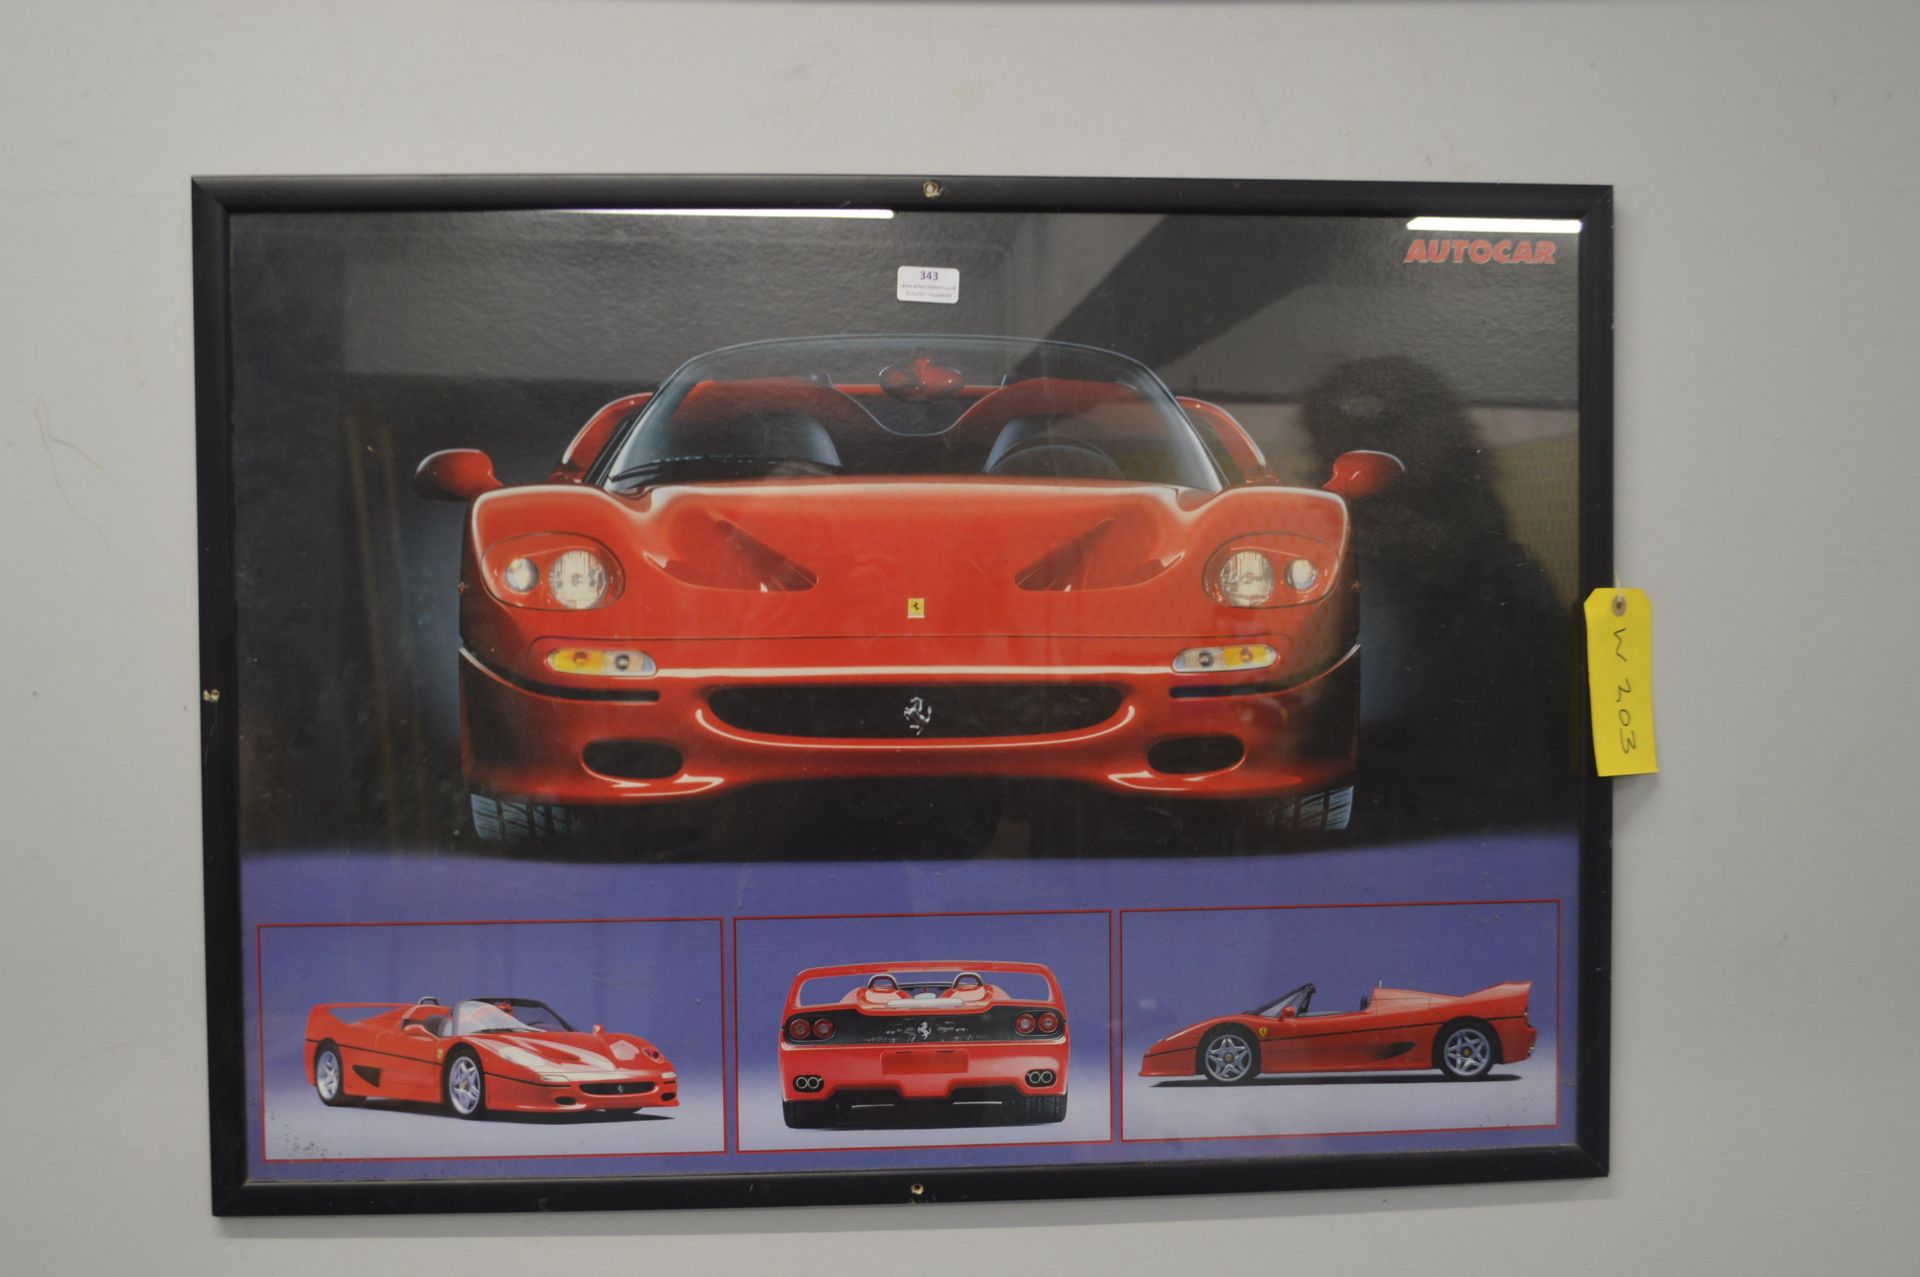 Framed Autocar Picture of a Ferrari F50